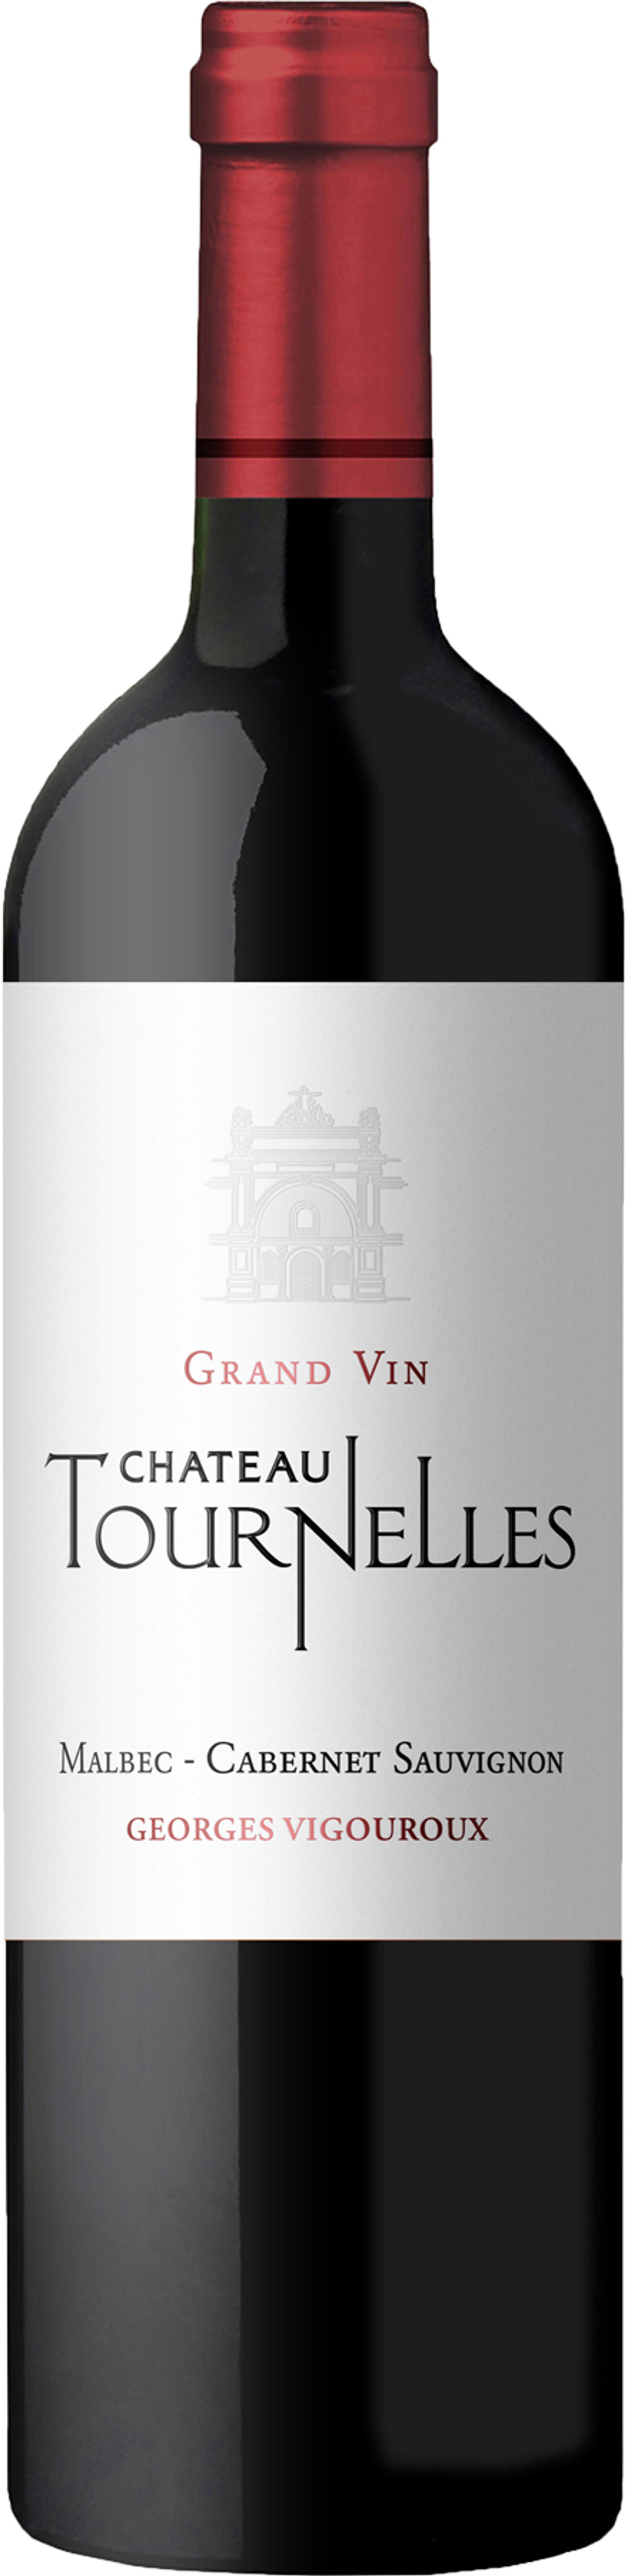 Château Tournelles Grand Vin